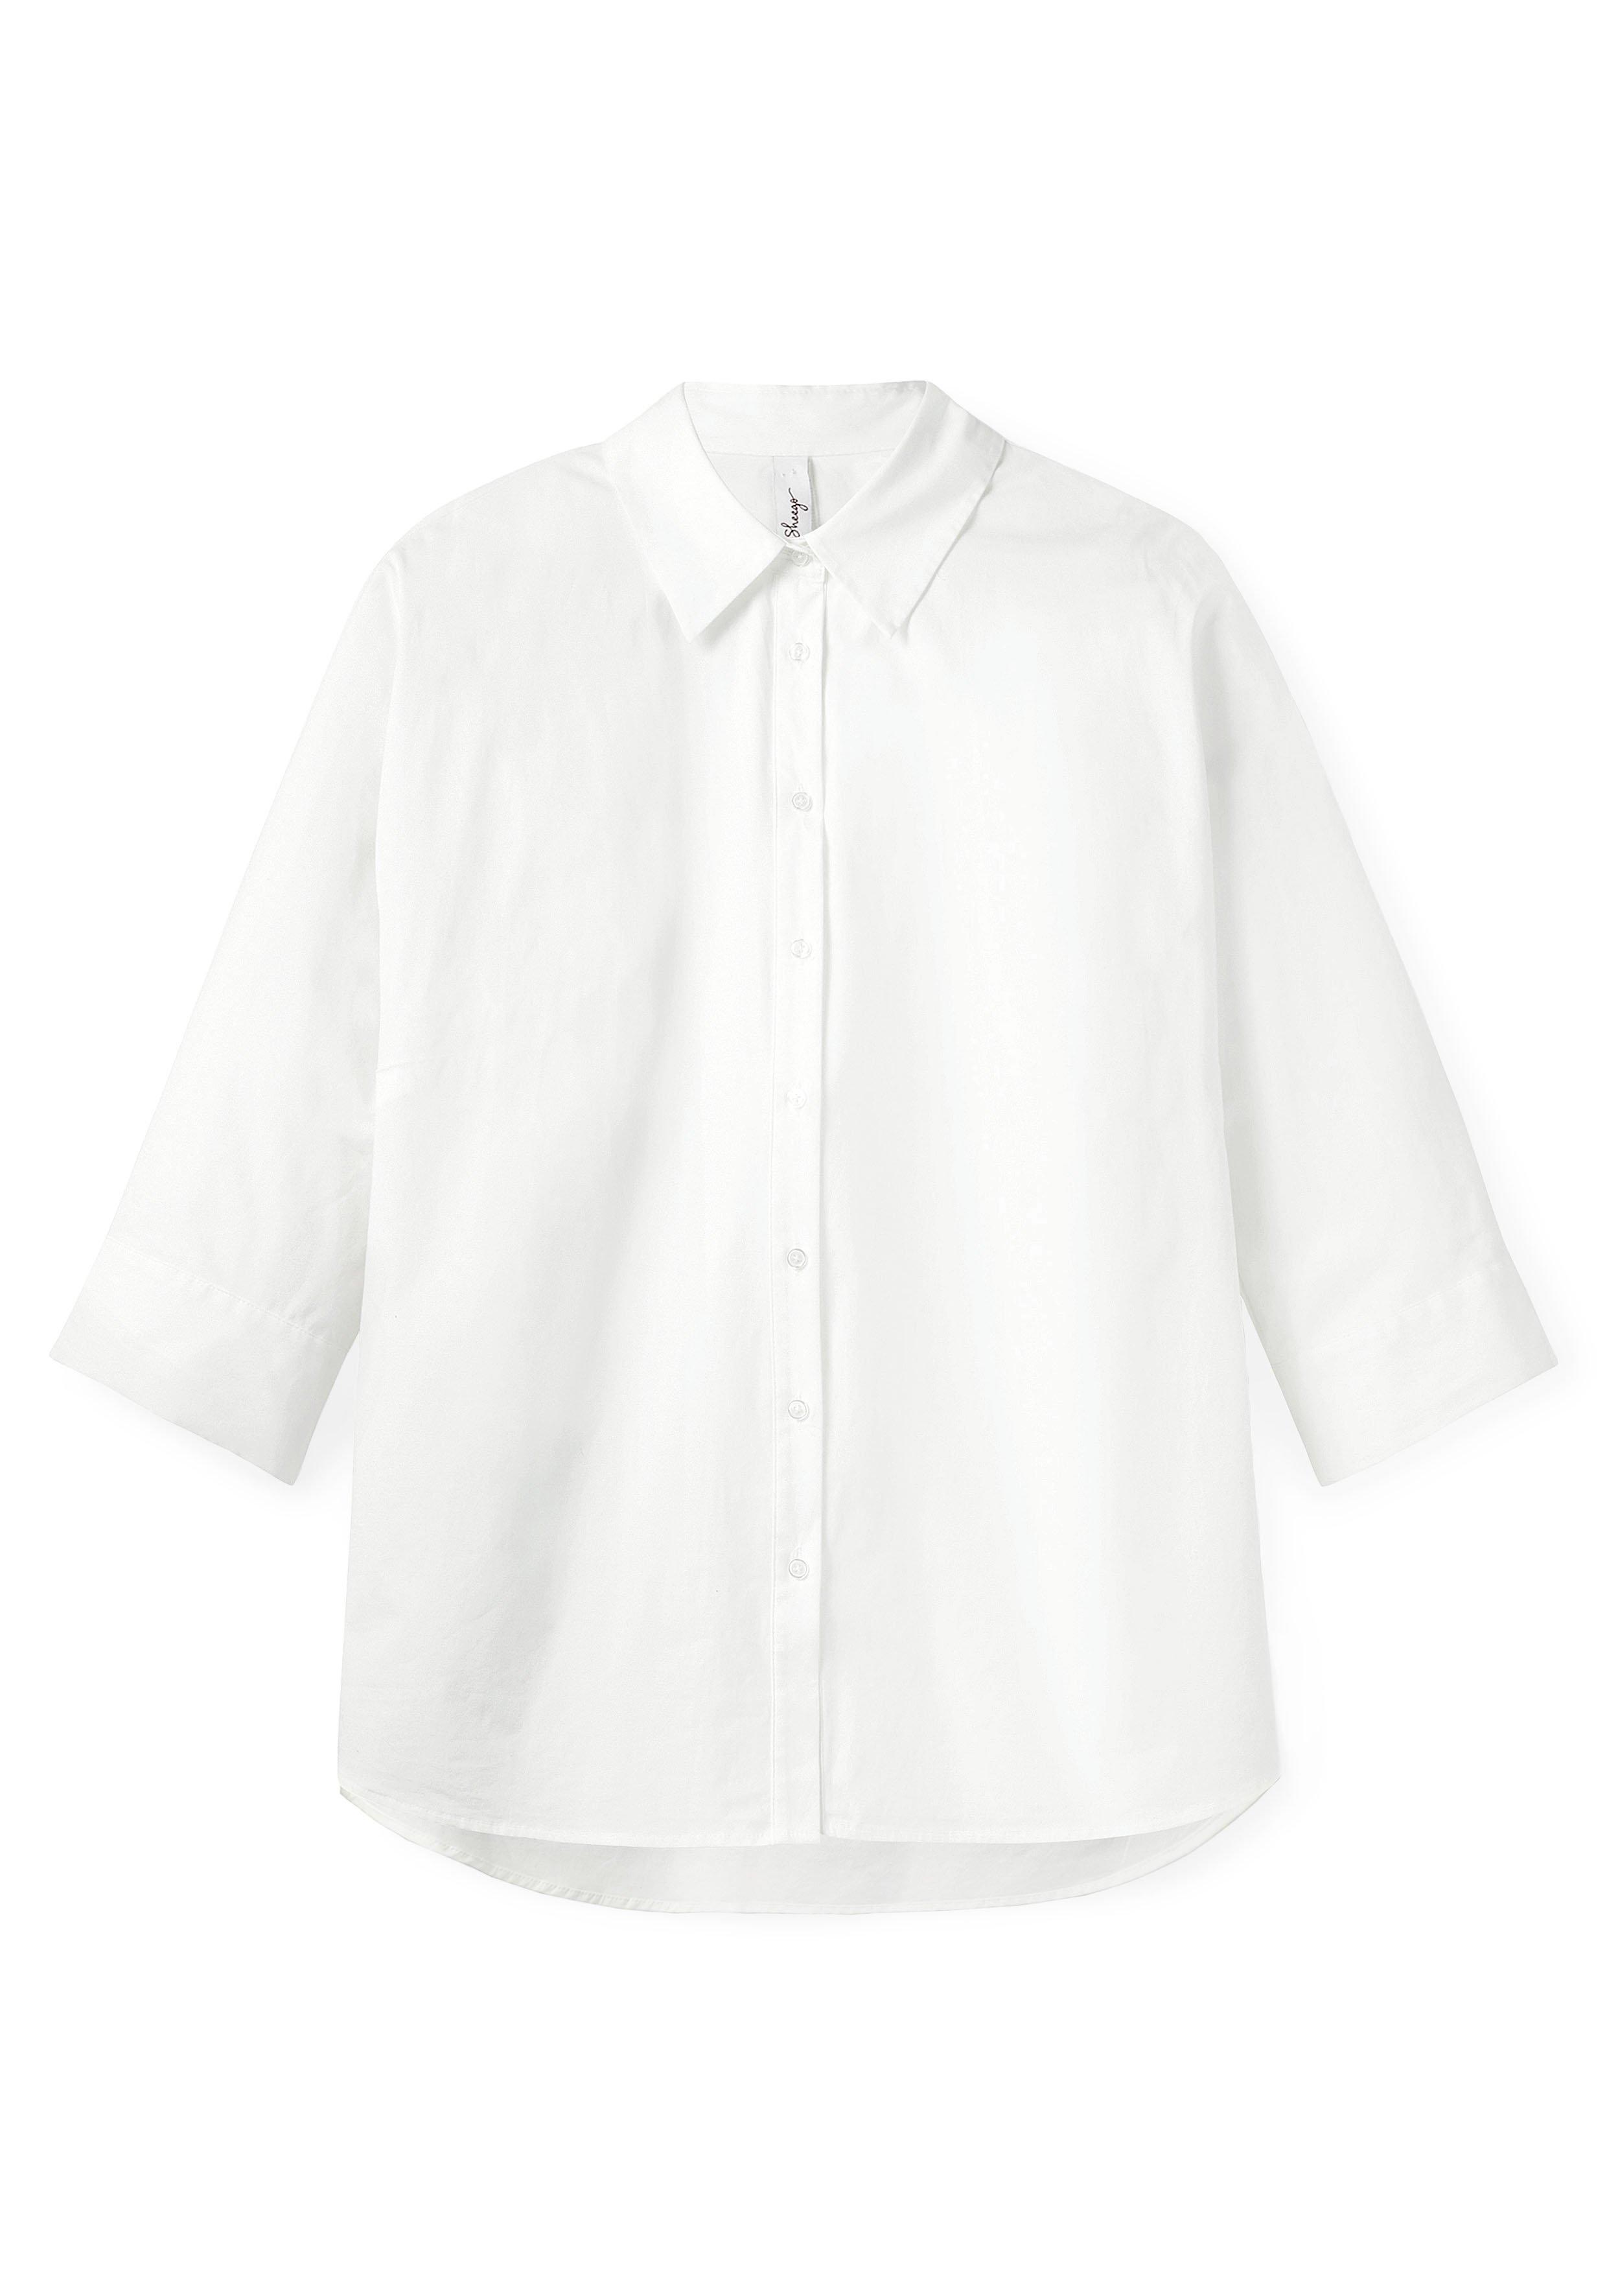 Hemdbluse mit 3/4-Arm, in weiß Popeline-Qualität sheego - 